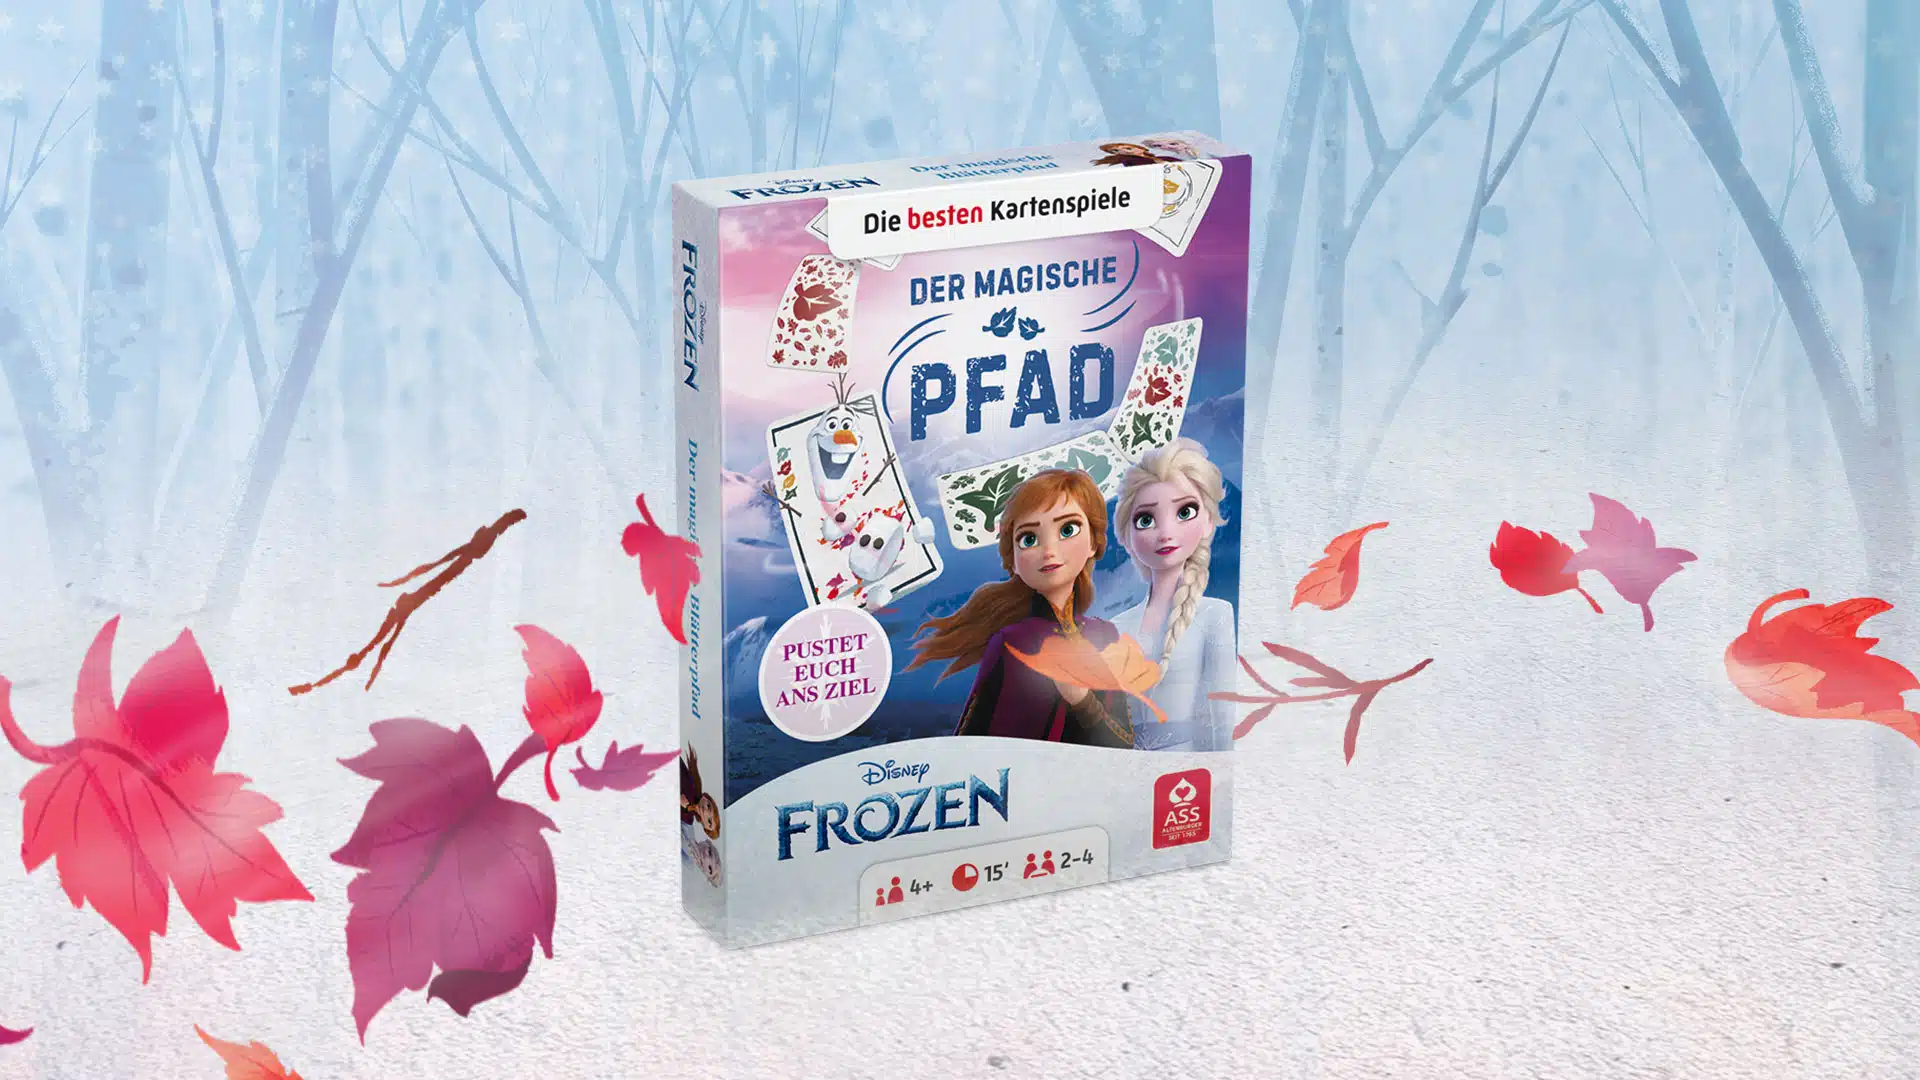 Das Disney Frozen der magische Pfad Spiel steht auf einem verschneitem Untergrund. Im Hintergrund ist ein verschneiter Wald zu erkennen, um das Spiel herum fliegen ein paar bunte Laubblätter im Wind.